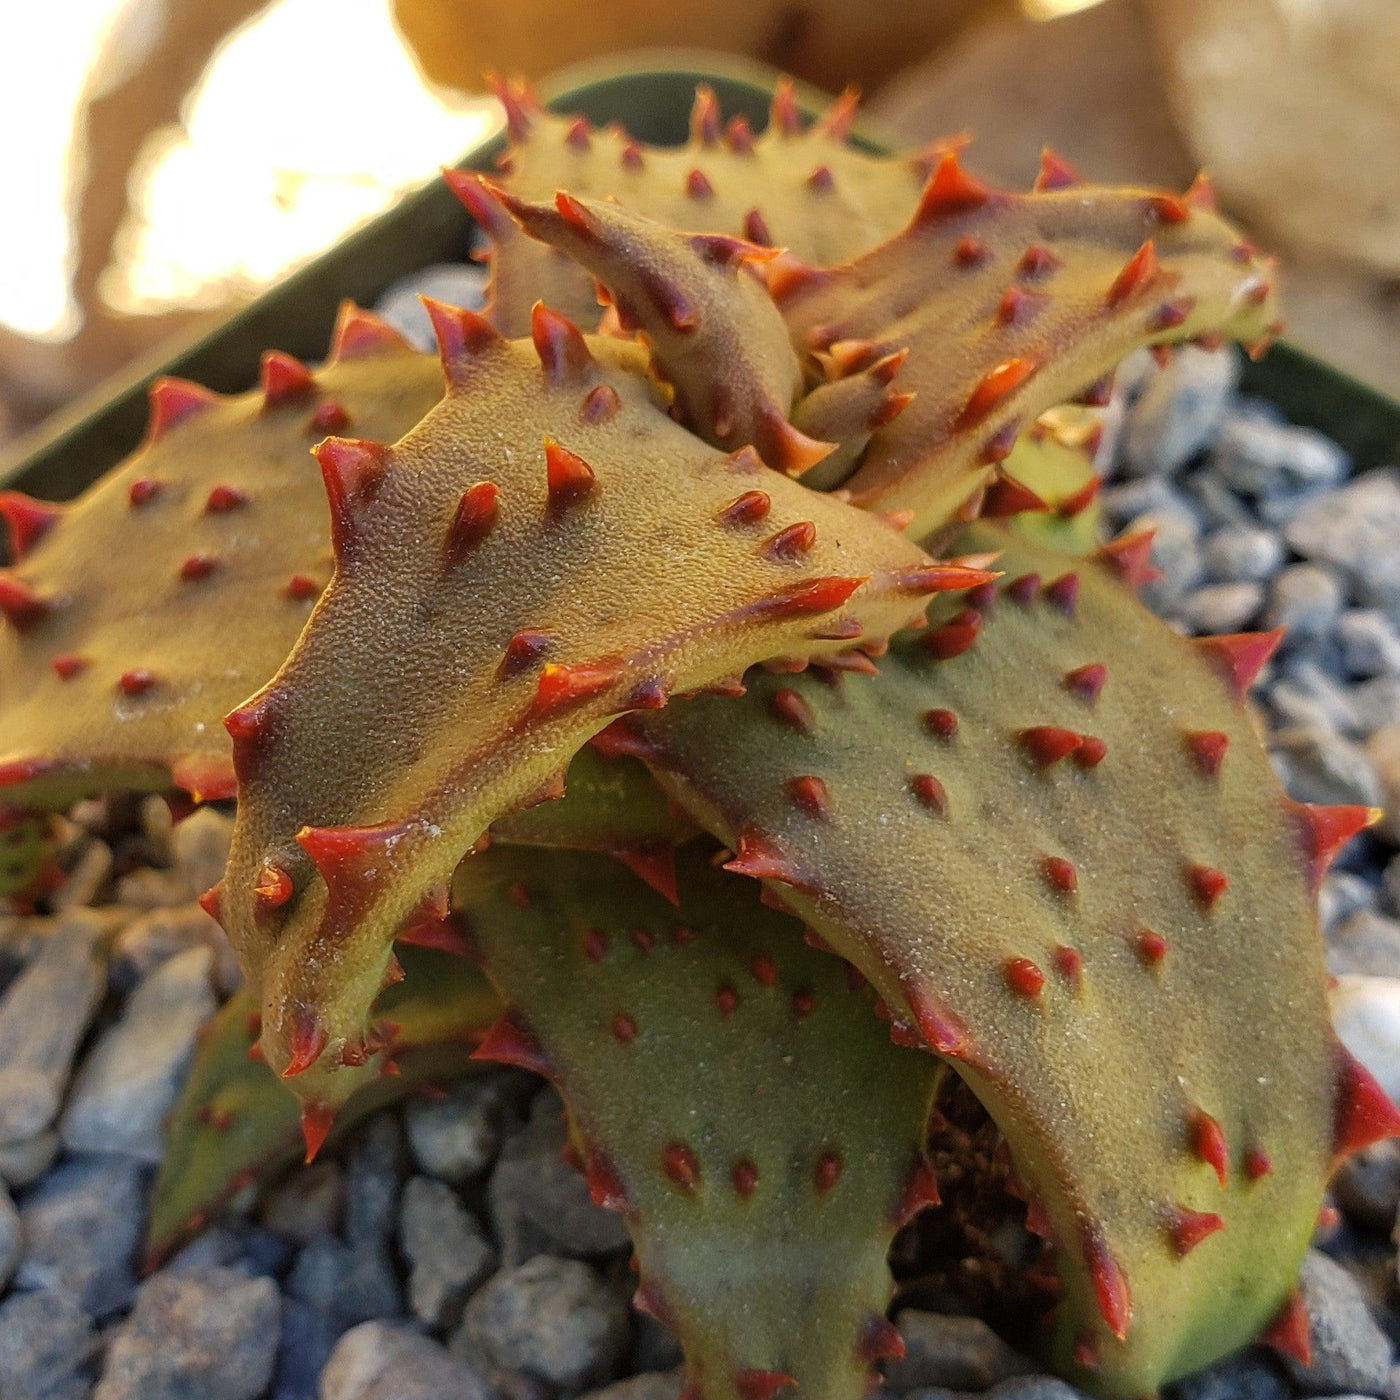 Aloe castilloniae